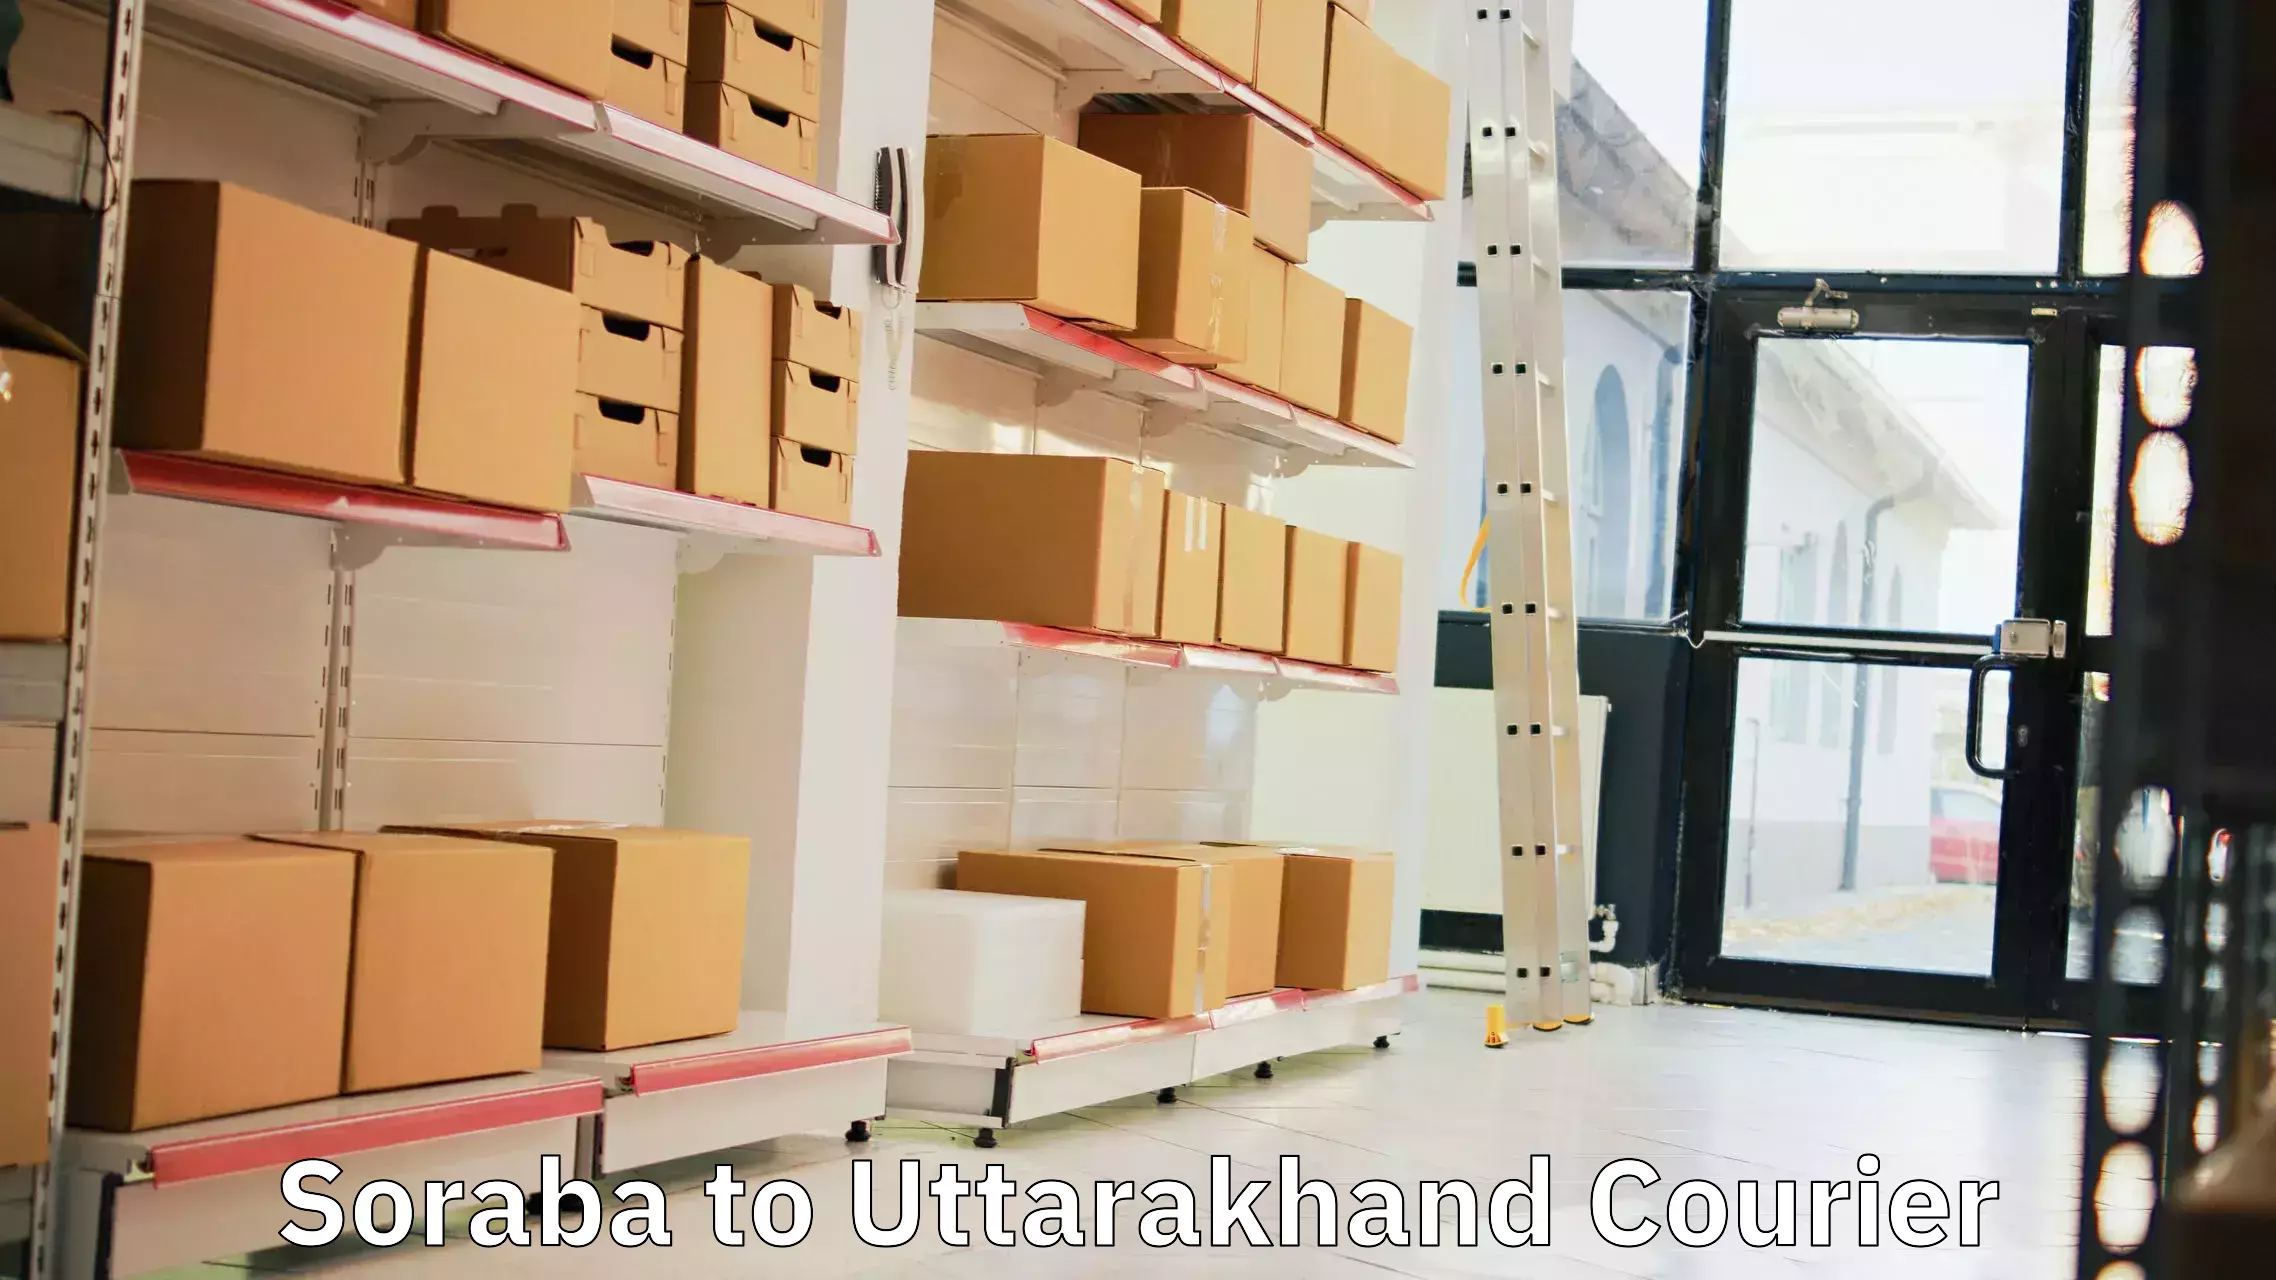 Professional parcel services Soraba to Gopeshwar